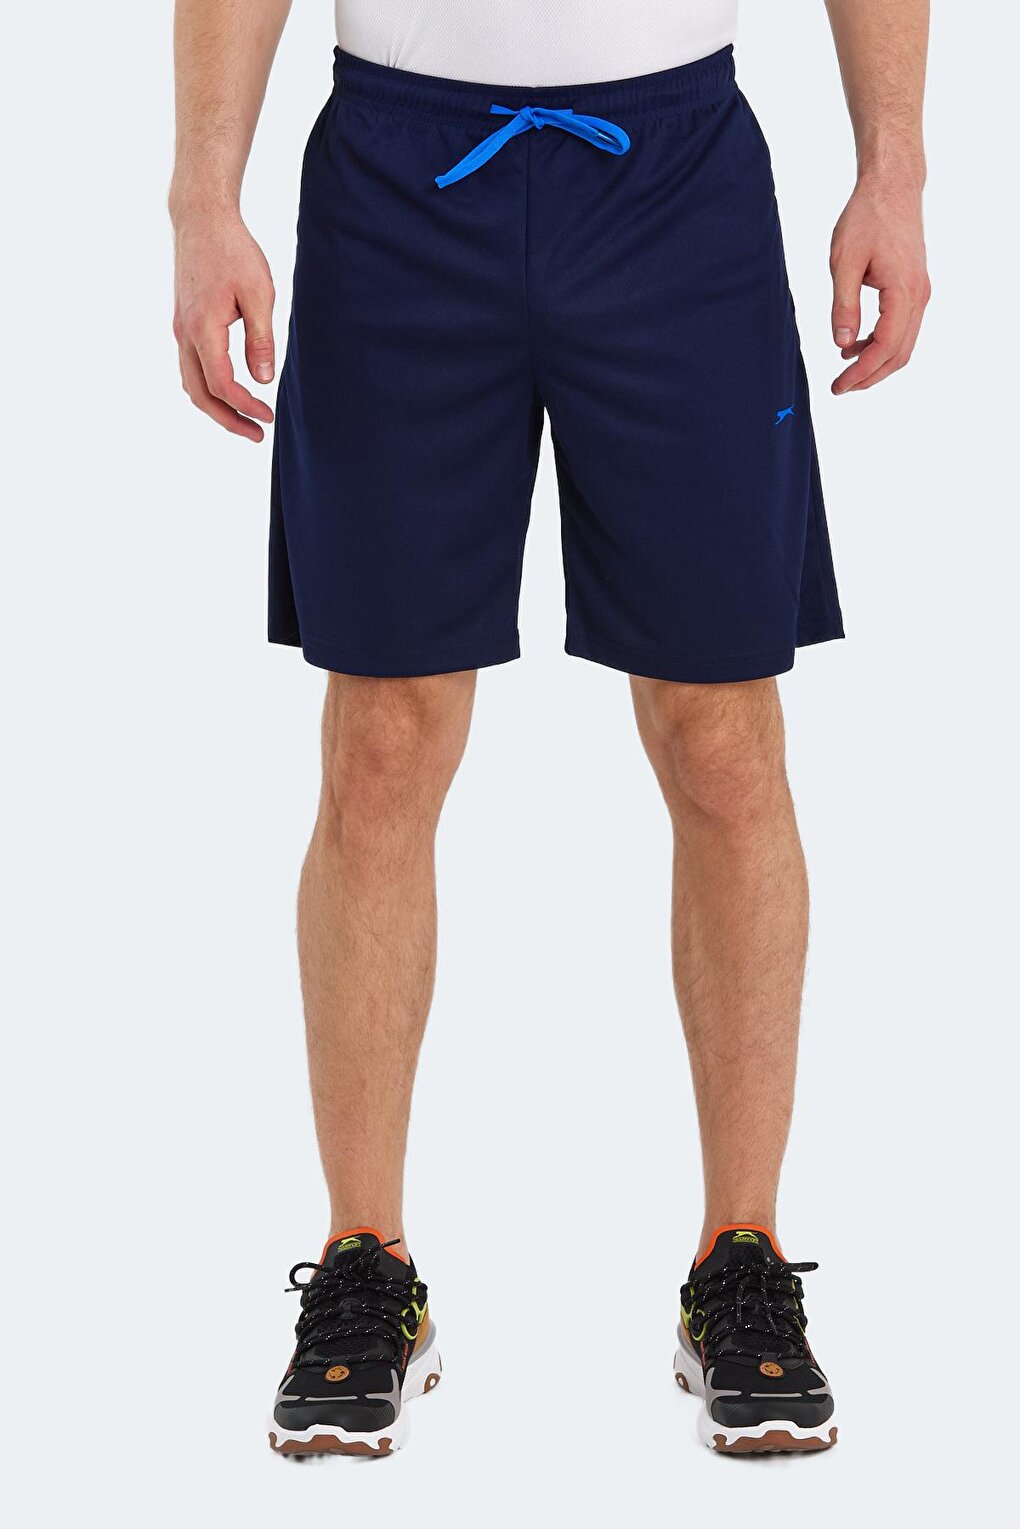 Мужские спортивные штаны ROSSI темно-синие SLAZENGER темно синие спортивные штаны с драпировкой open yy